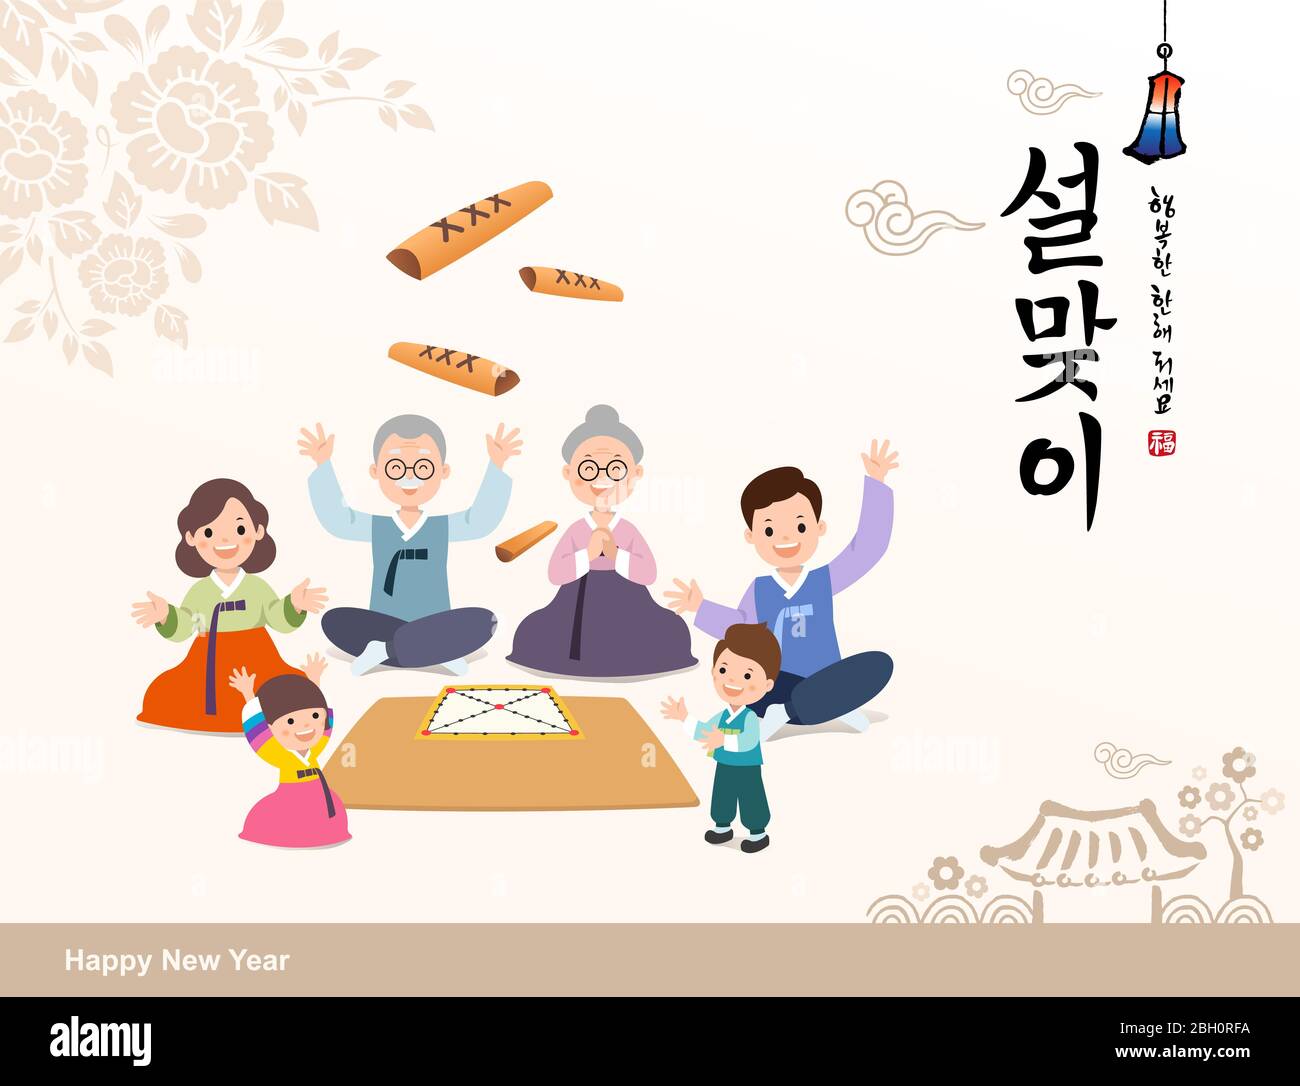 Koreanisches Neujahr. Koreanische traditionelle Spiel yut nori, lustige Familie, Konzept-Design. Frohes neues Jahr, koreanische Übersetzung. Stock Vektor